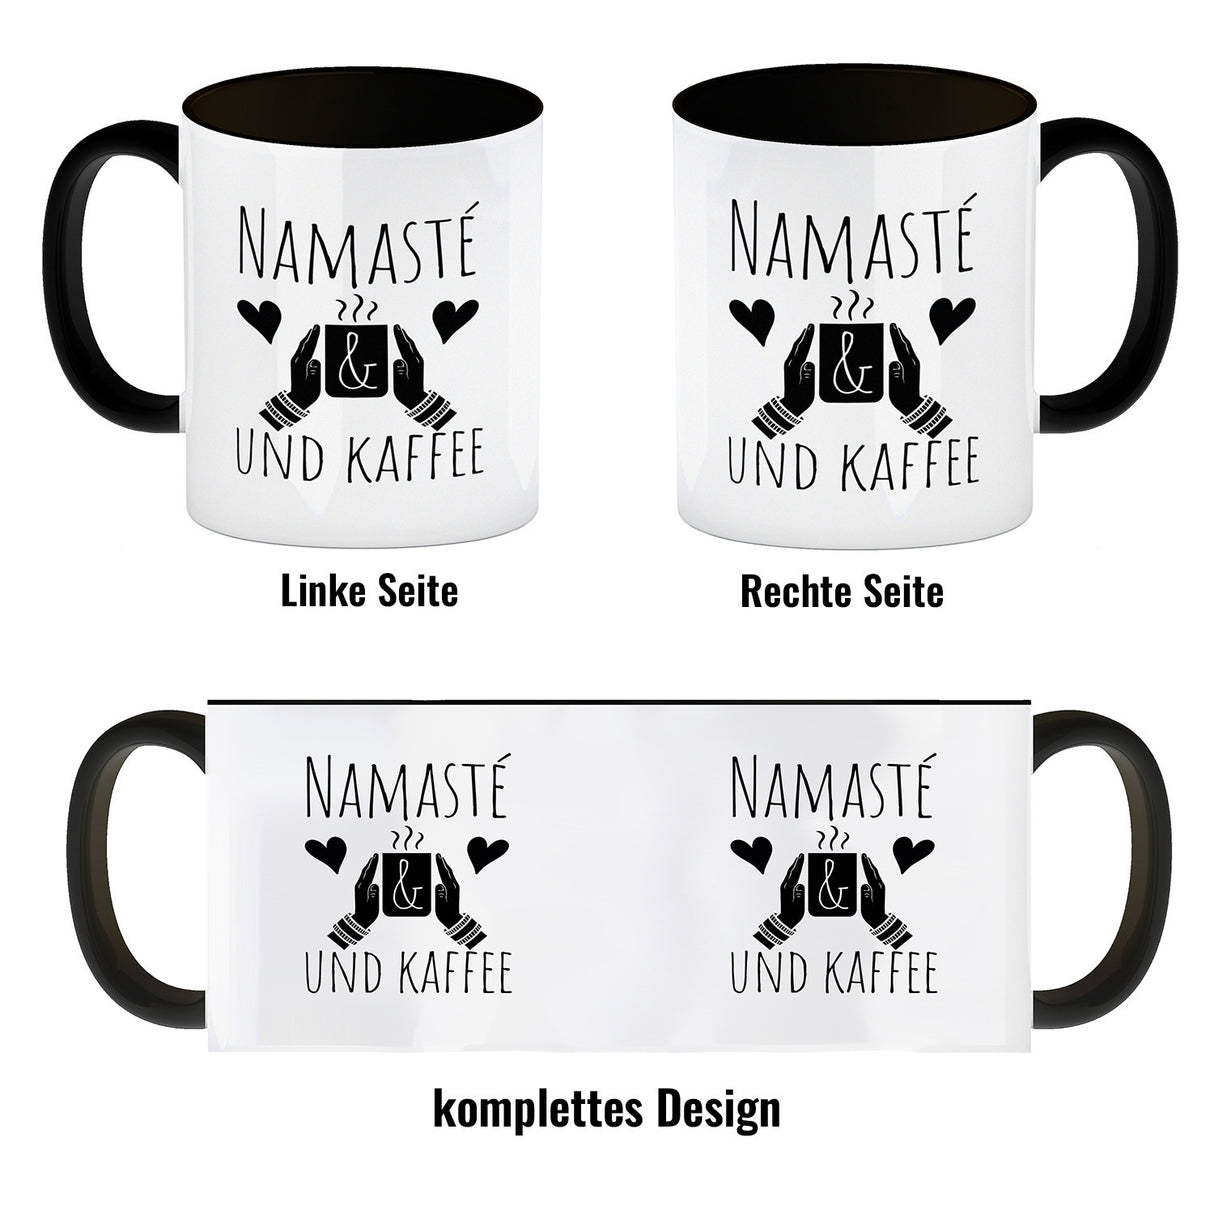 Namasté und Kaffee Kaffeebecher mit entspannendem Motiv